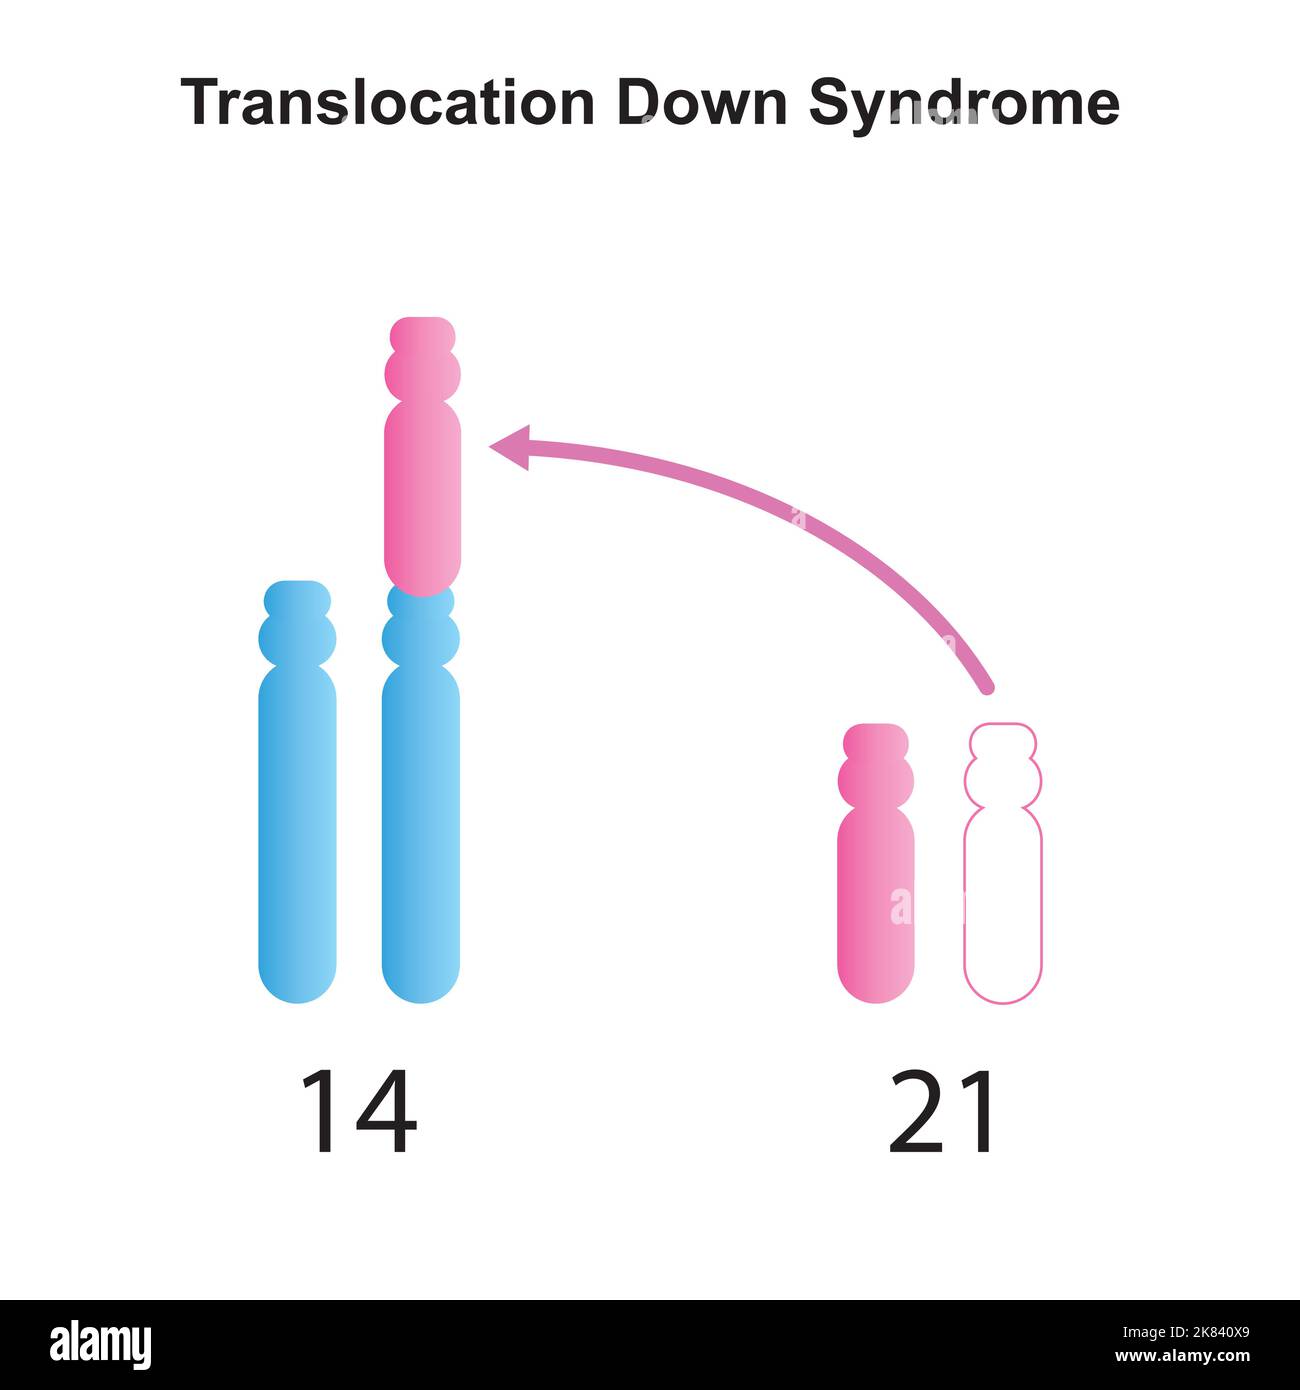 Progettazione scientifica della sindrome di traslocazione di Robertsonian giù. Simboli colorati. Illustrazione vettoriale. Illustrazione Vettoriale